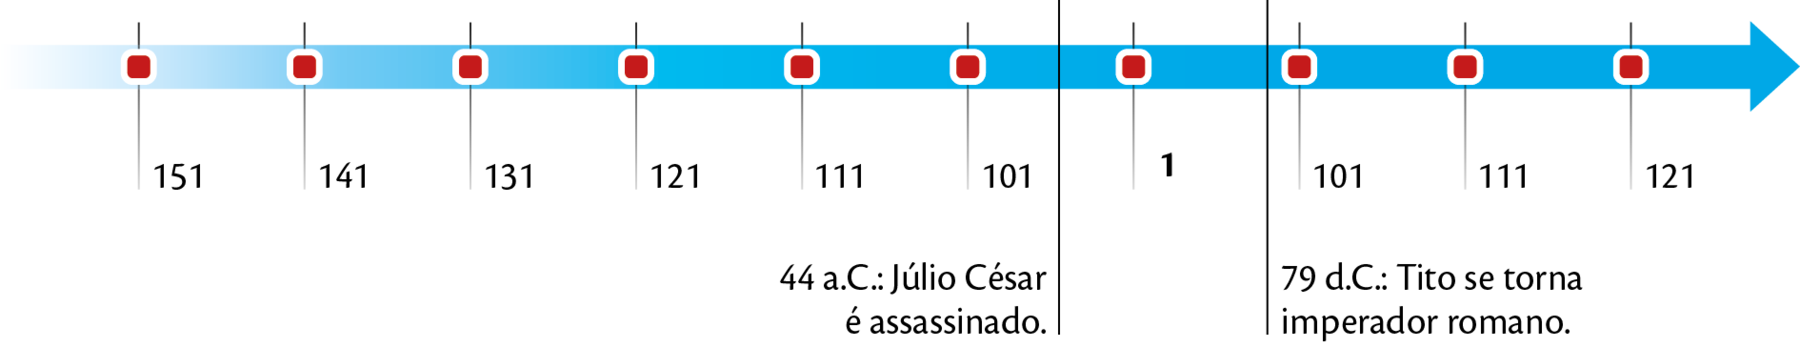 Linha do tempo horizontal. Linha azul com uma seta para a direita. Está marcada por pontos vermelhos em sequência, com números. Da esquerda para a direita: 151, 141, 131, 121, 111, 101, 1, 101, 111, 121. Entre os números 101 e 1, um linha vertical preta e o seguinte texto: 44 antes de Cristo: Júlio Cesar é assassinado; Entre os números 1 e 101, um linha vertical preta e o seguinte texto: 79 depois de Cristo; Tito se torna imperador romano.